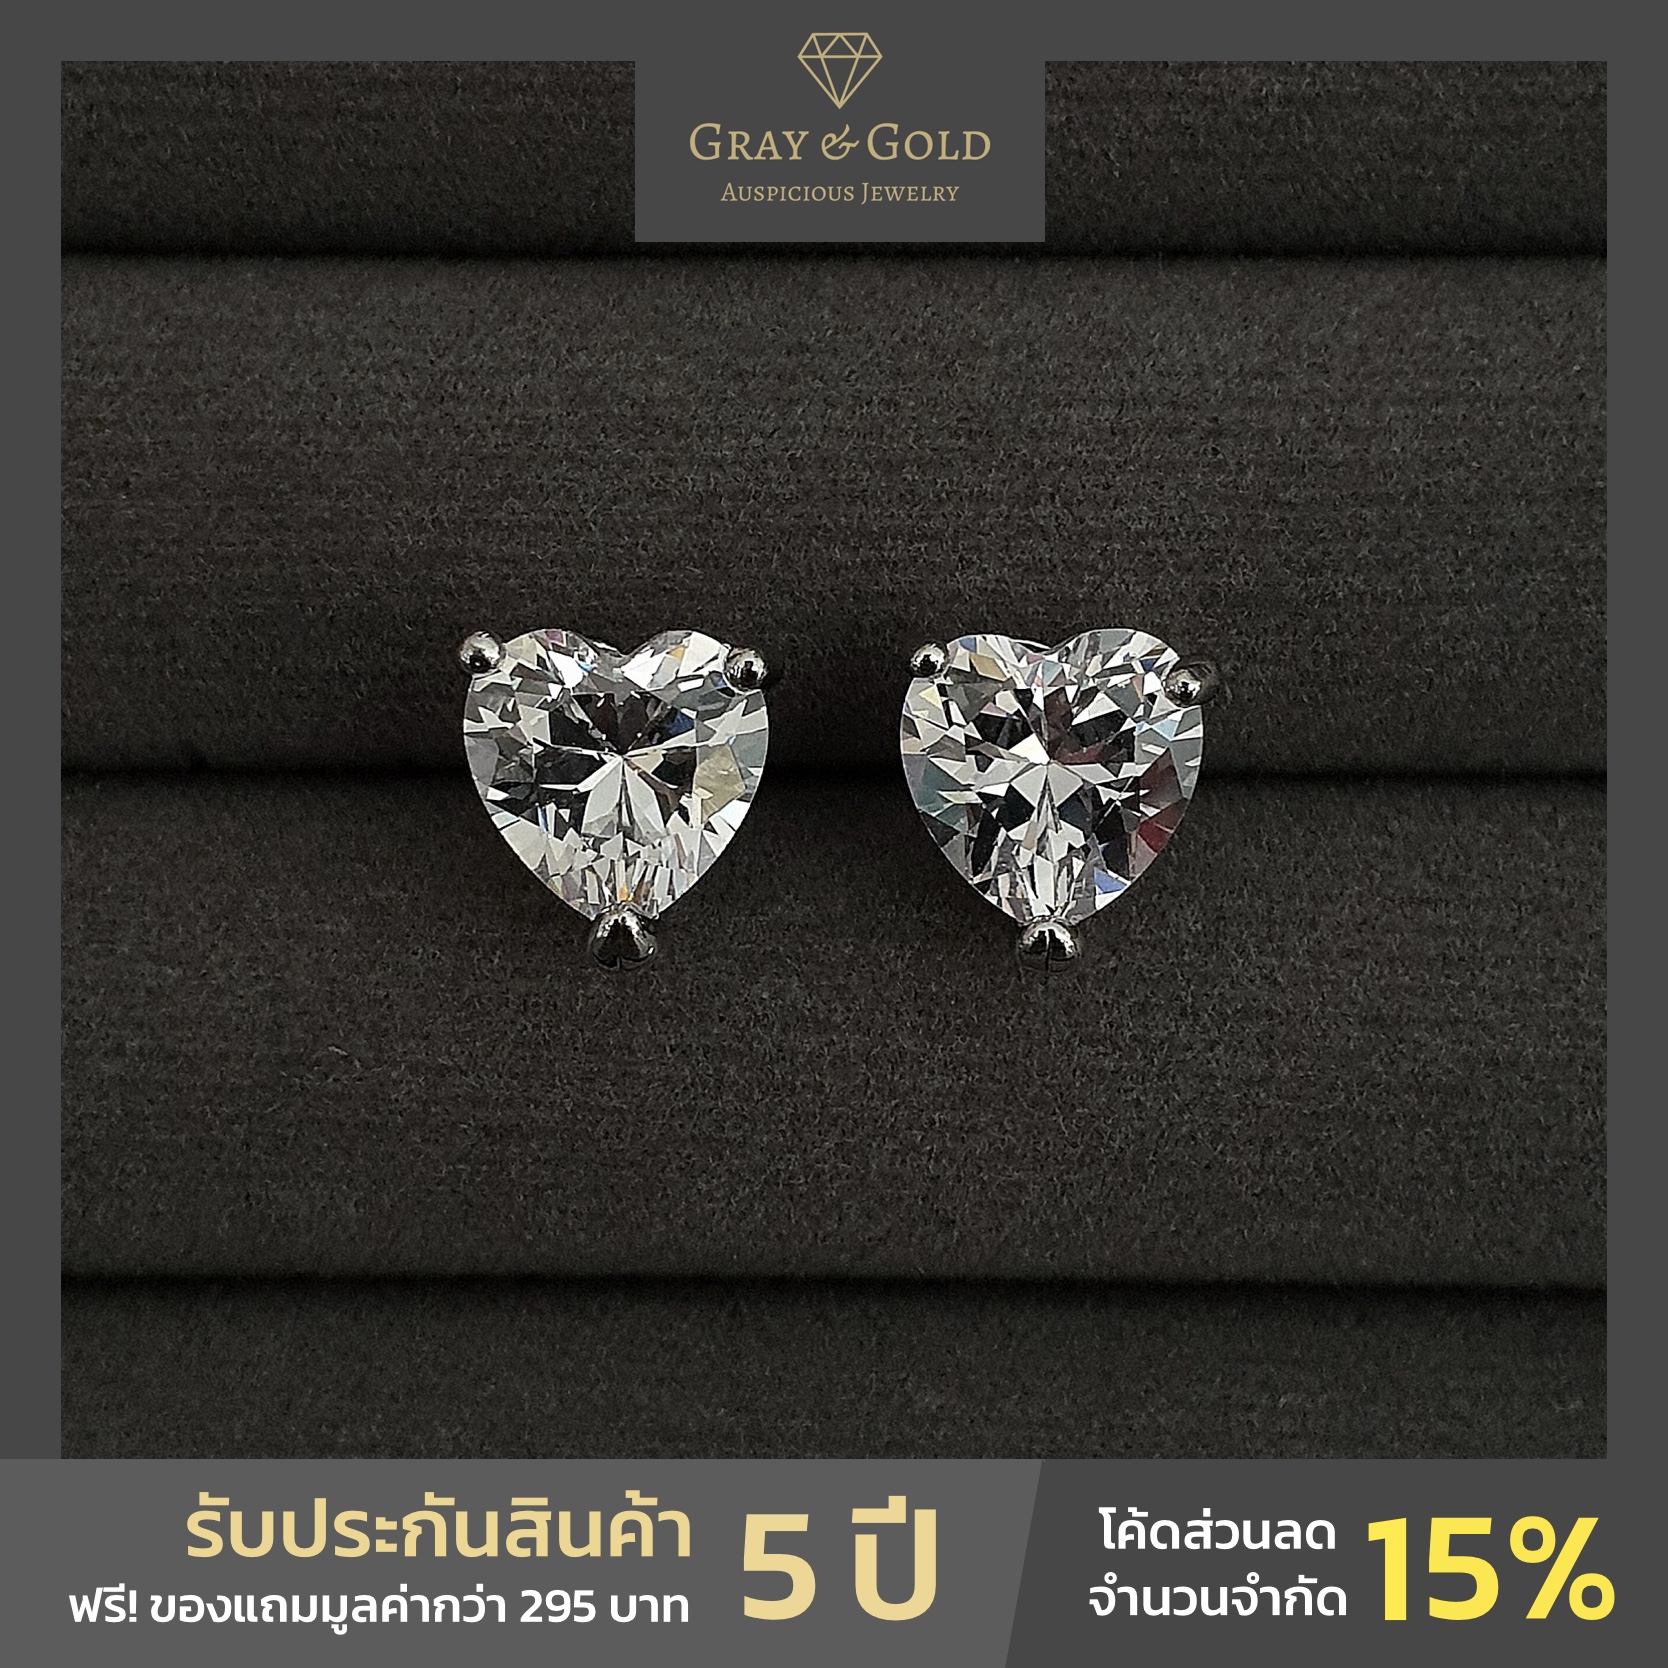 ต่างหูเพชรสวิส ทรงหัวใจ (Heart Cut Diamond) ชุบทองคำขาว 18k Gray & Gold Jewelry